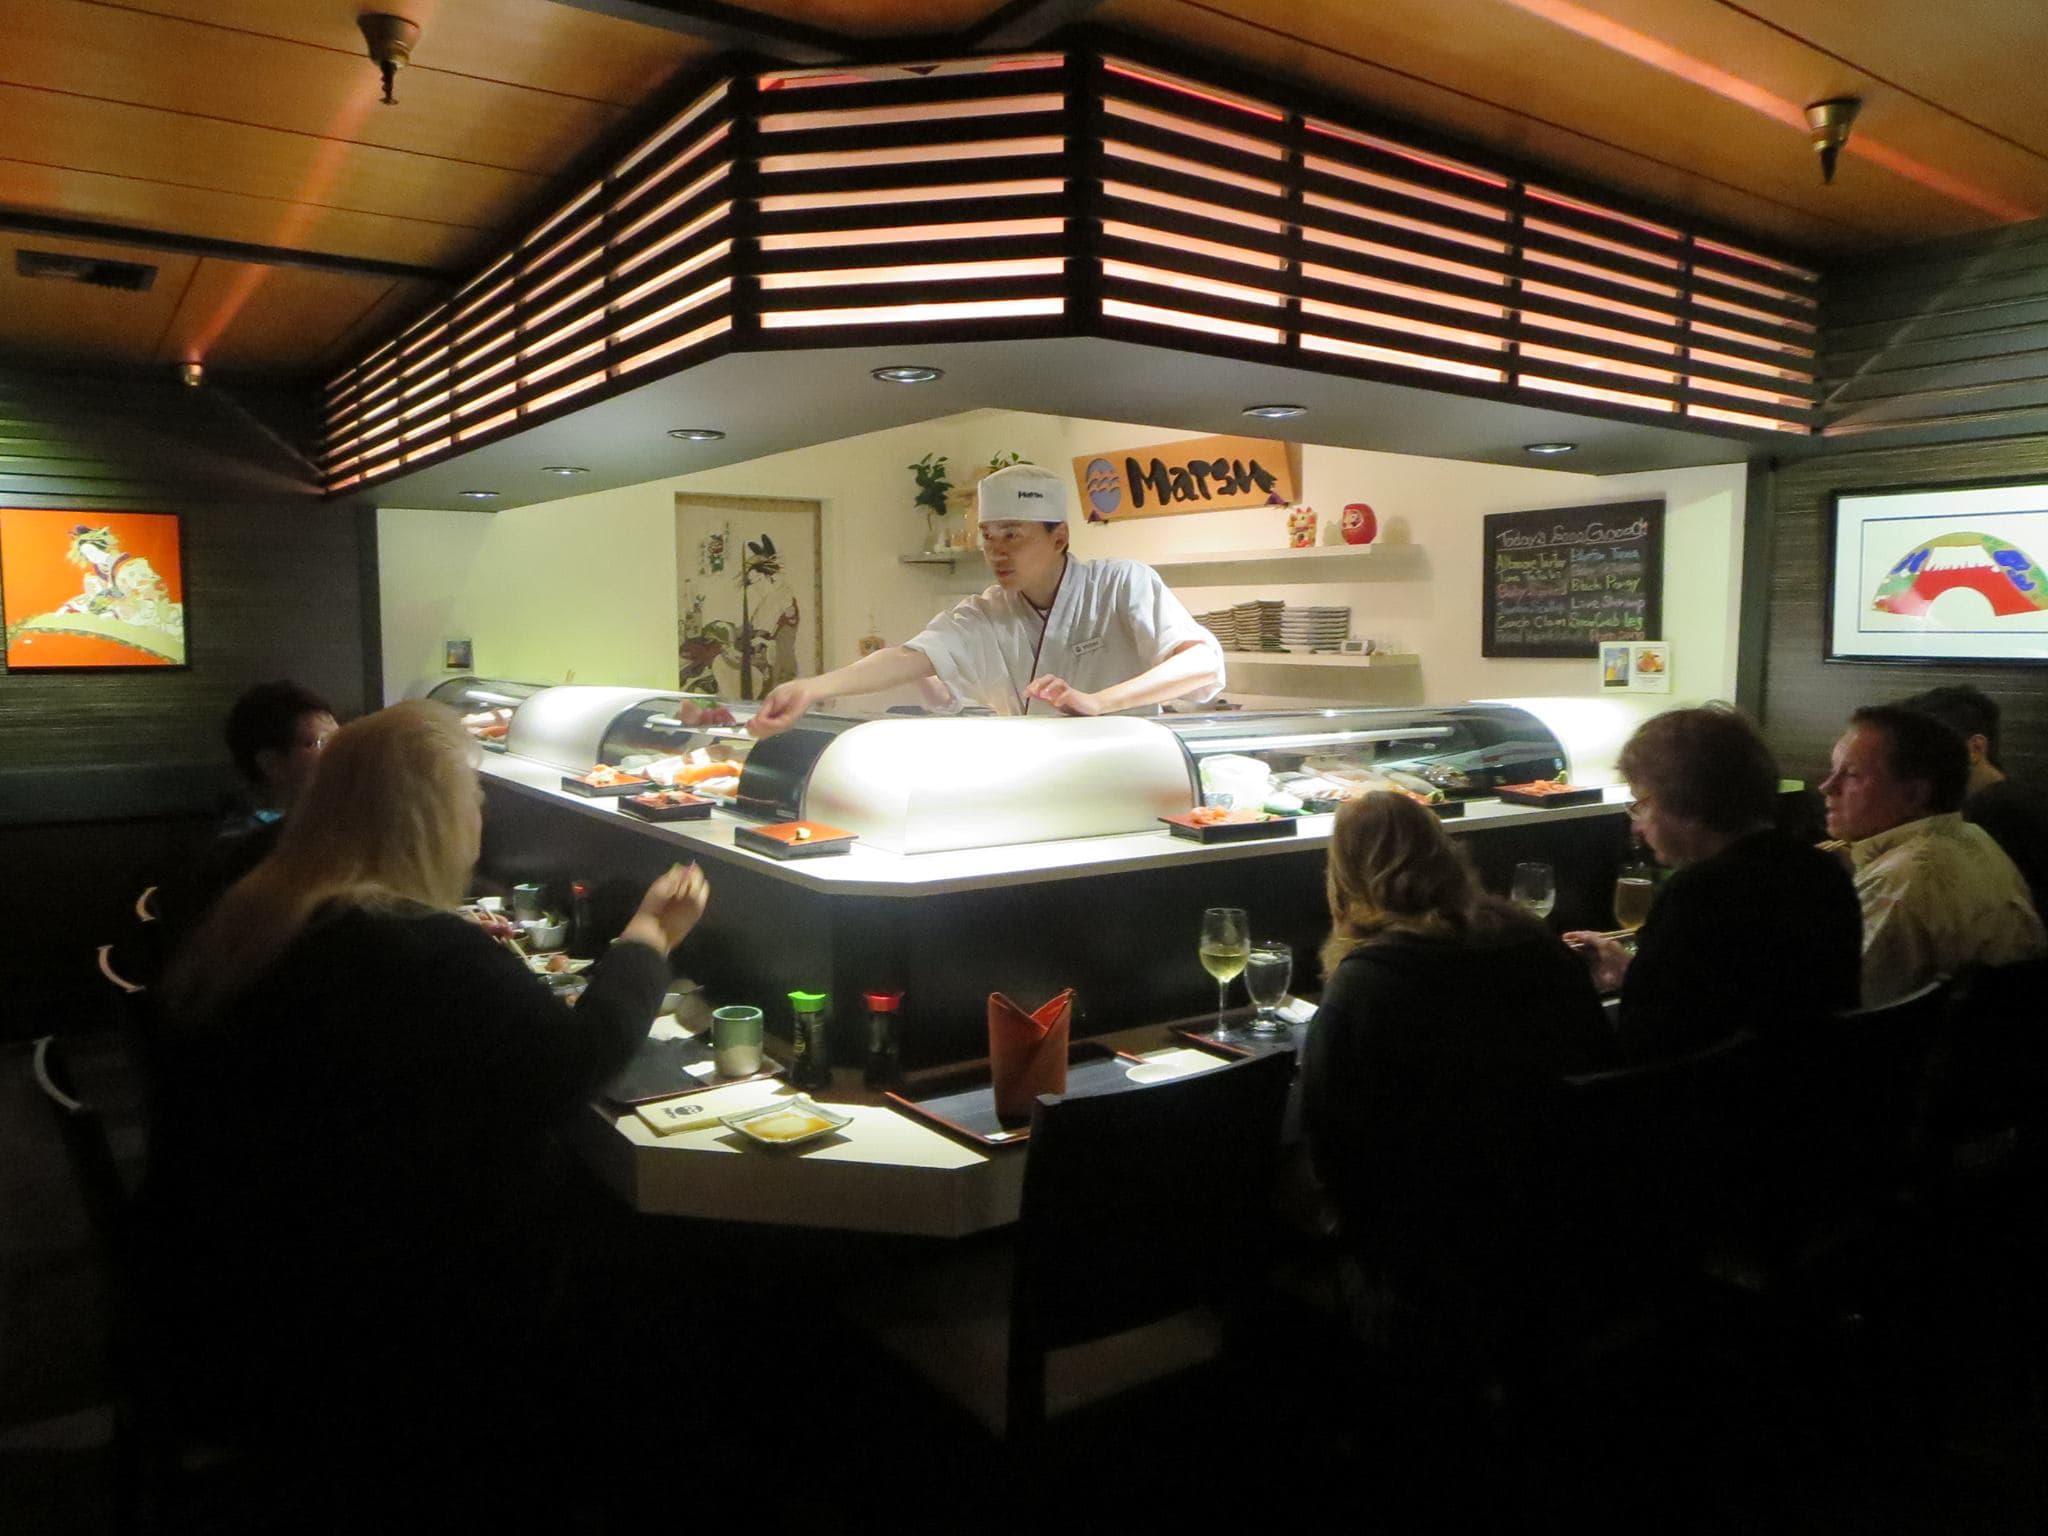 japanese sushi bar